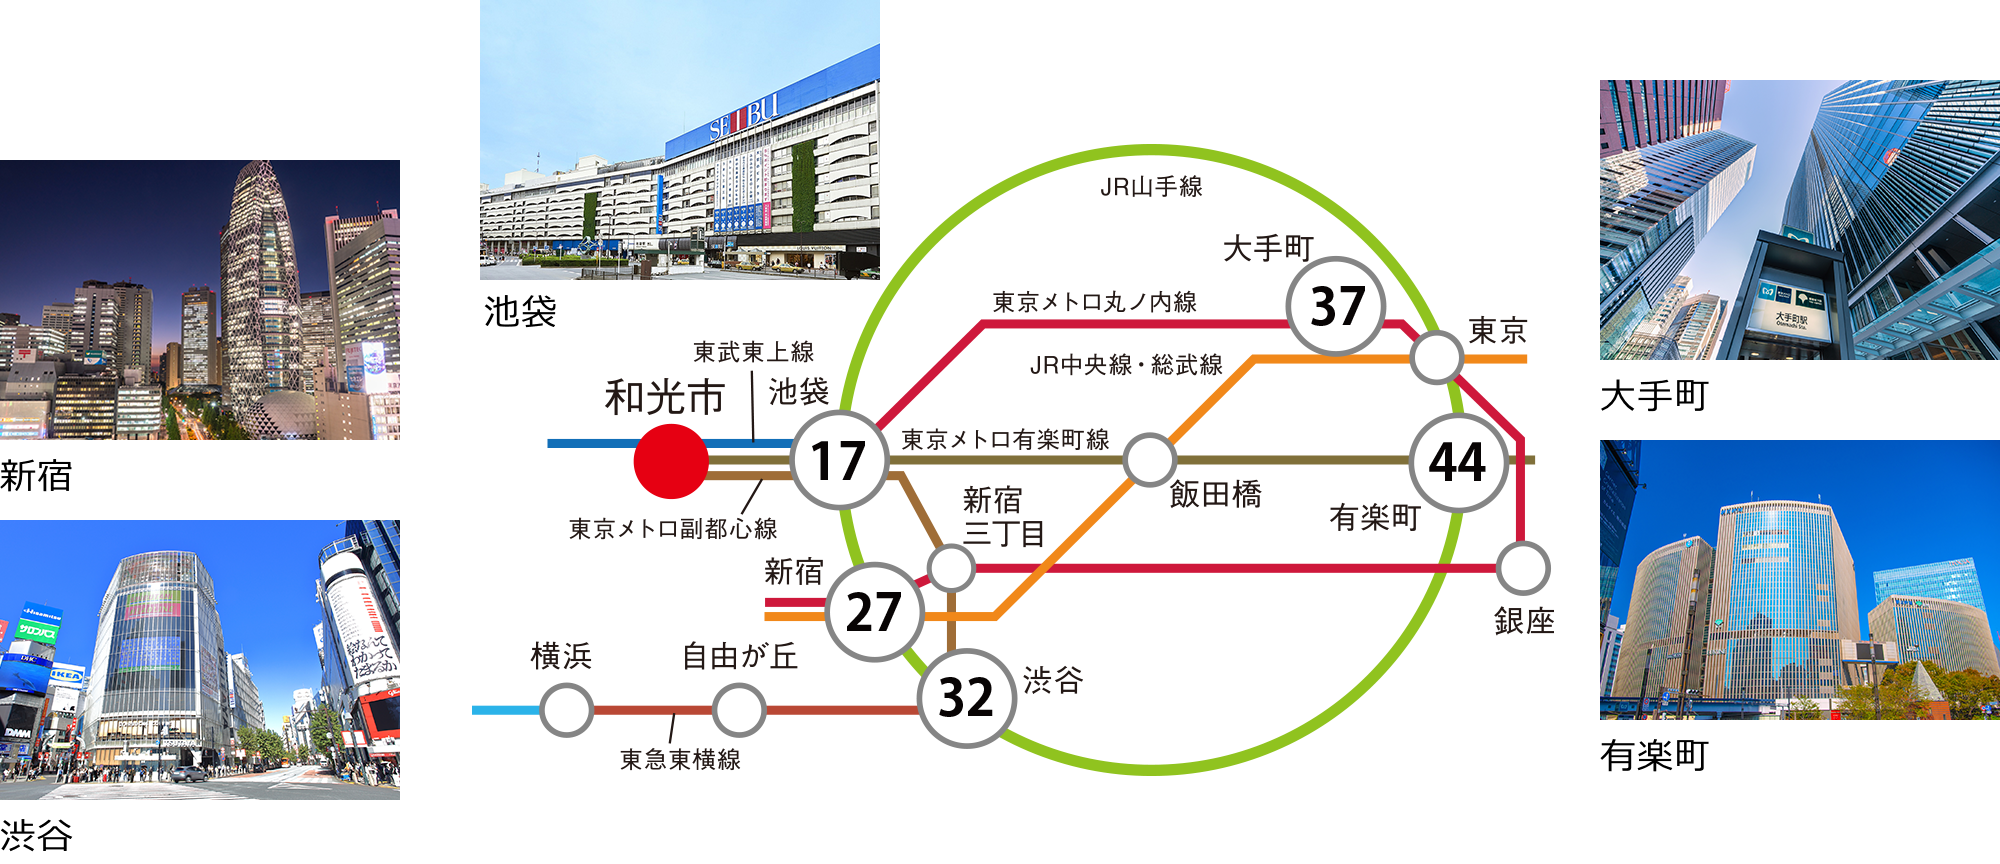 「和光市」駅周辺の路線図。「和光市」駅から「池袋」駅までは17分でアクセスできます。そこから山手線に乗り換え「新宿」駅まで28分、「渋谷」駅まで32分。その他「大手町」駅や「有楽町」駅にも乗り換え１回でアクセスできます。